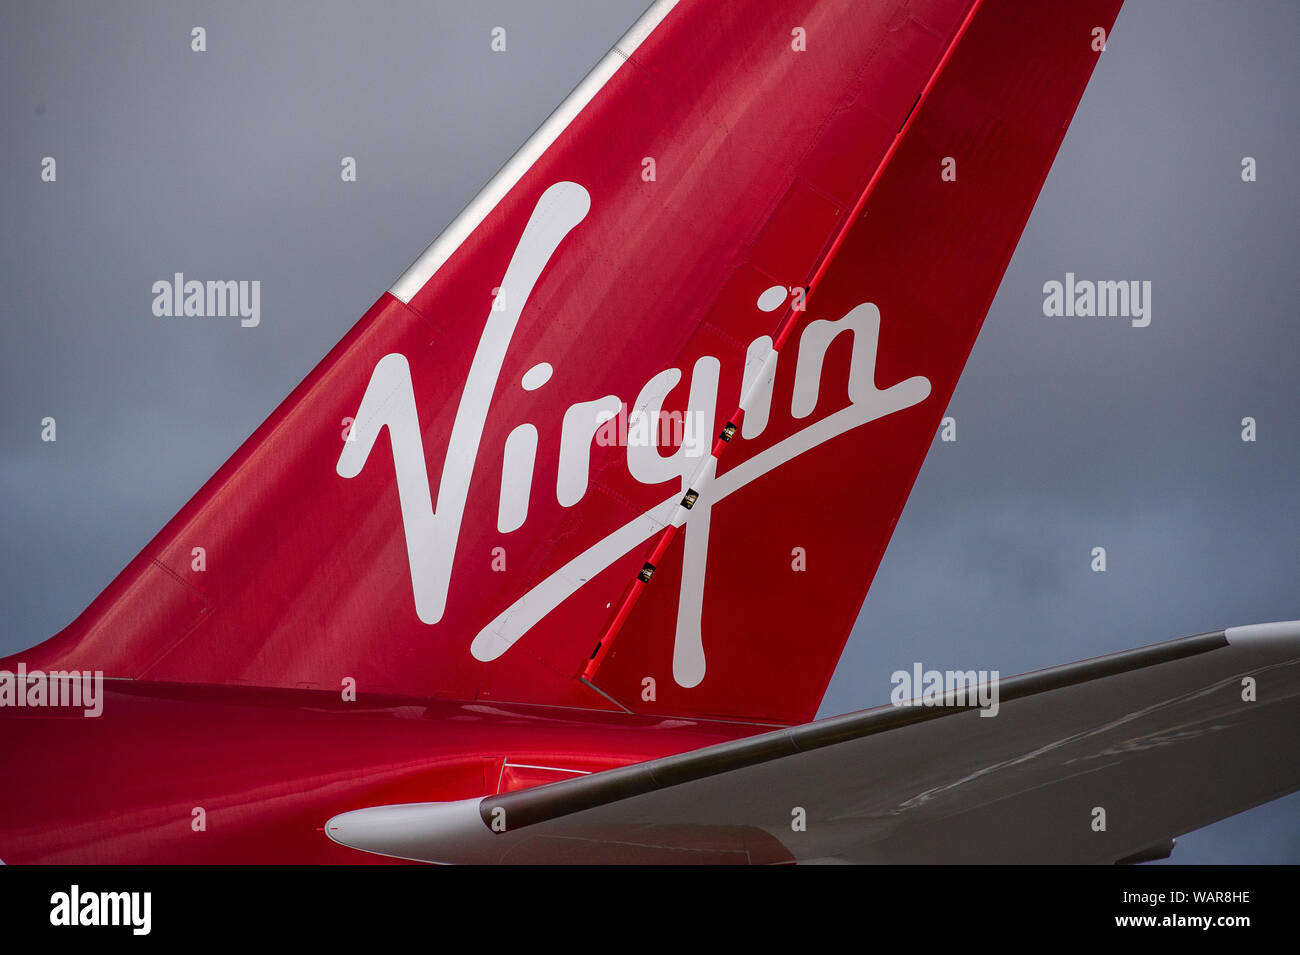 Glasgow, UK. 21. August 2019. Virgin Atlantic Airbus A350-1000 Flugzeug am Internationalen Flughafen Glasgow für Pilot Training gesehen. Die Marke Virgin neuen Jumbo Jet bietet sozialen eine erstaunliche neue "Loft" Raum mit Sofas in der Business Class, und treffend die Registrierung G-VLUX geschmückt. Das gesamte Flugzeug haben auch Zugang zu High-Speed-WLAN. Virgin Atlantic hat insgesamt 12 Airbus A350-1000 s. Sie sind alle geplanten die Flotte bis 2021 melden Sie in eine Bestellung im Wert von schätzungsweise $ 4,4 Mrd. £ (3,36 Mrd. Euro). Das Flugzeug verspricht auch zu 30% sparsamer Einsparung von CO2-Emissionen. Stockfoto